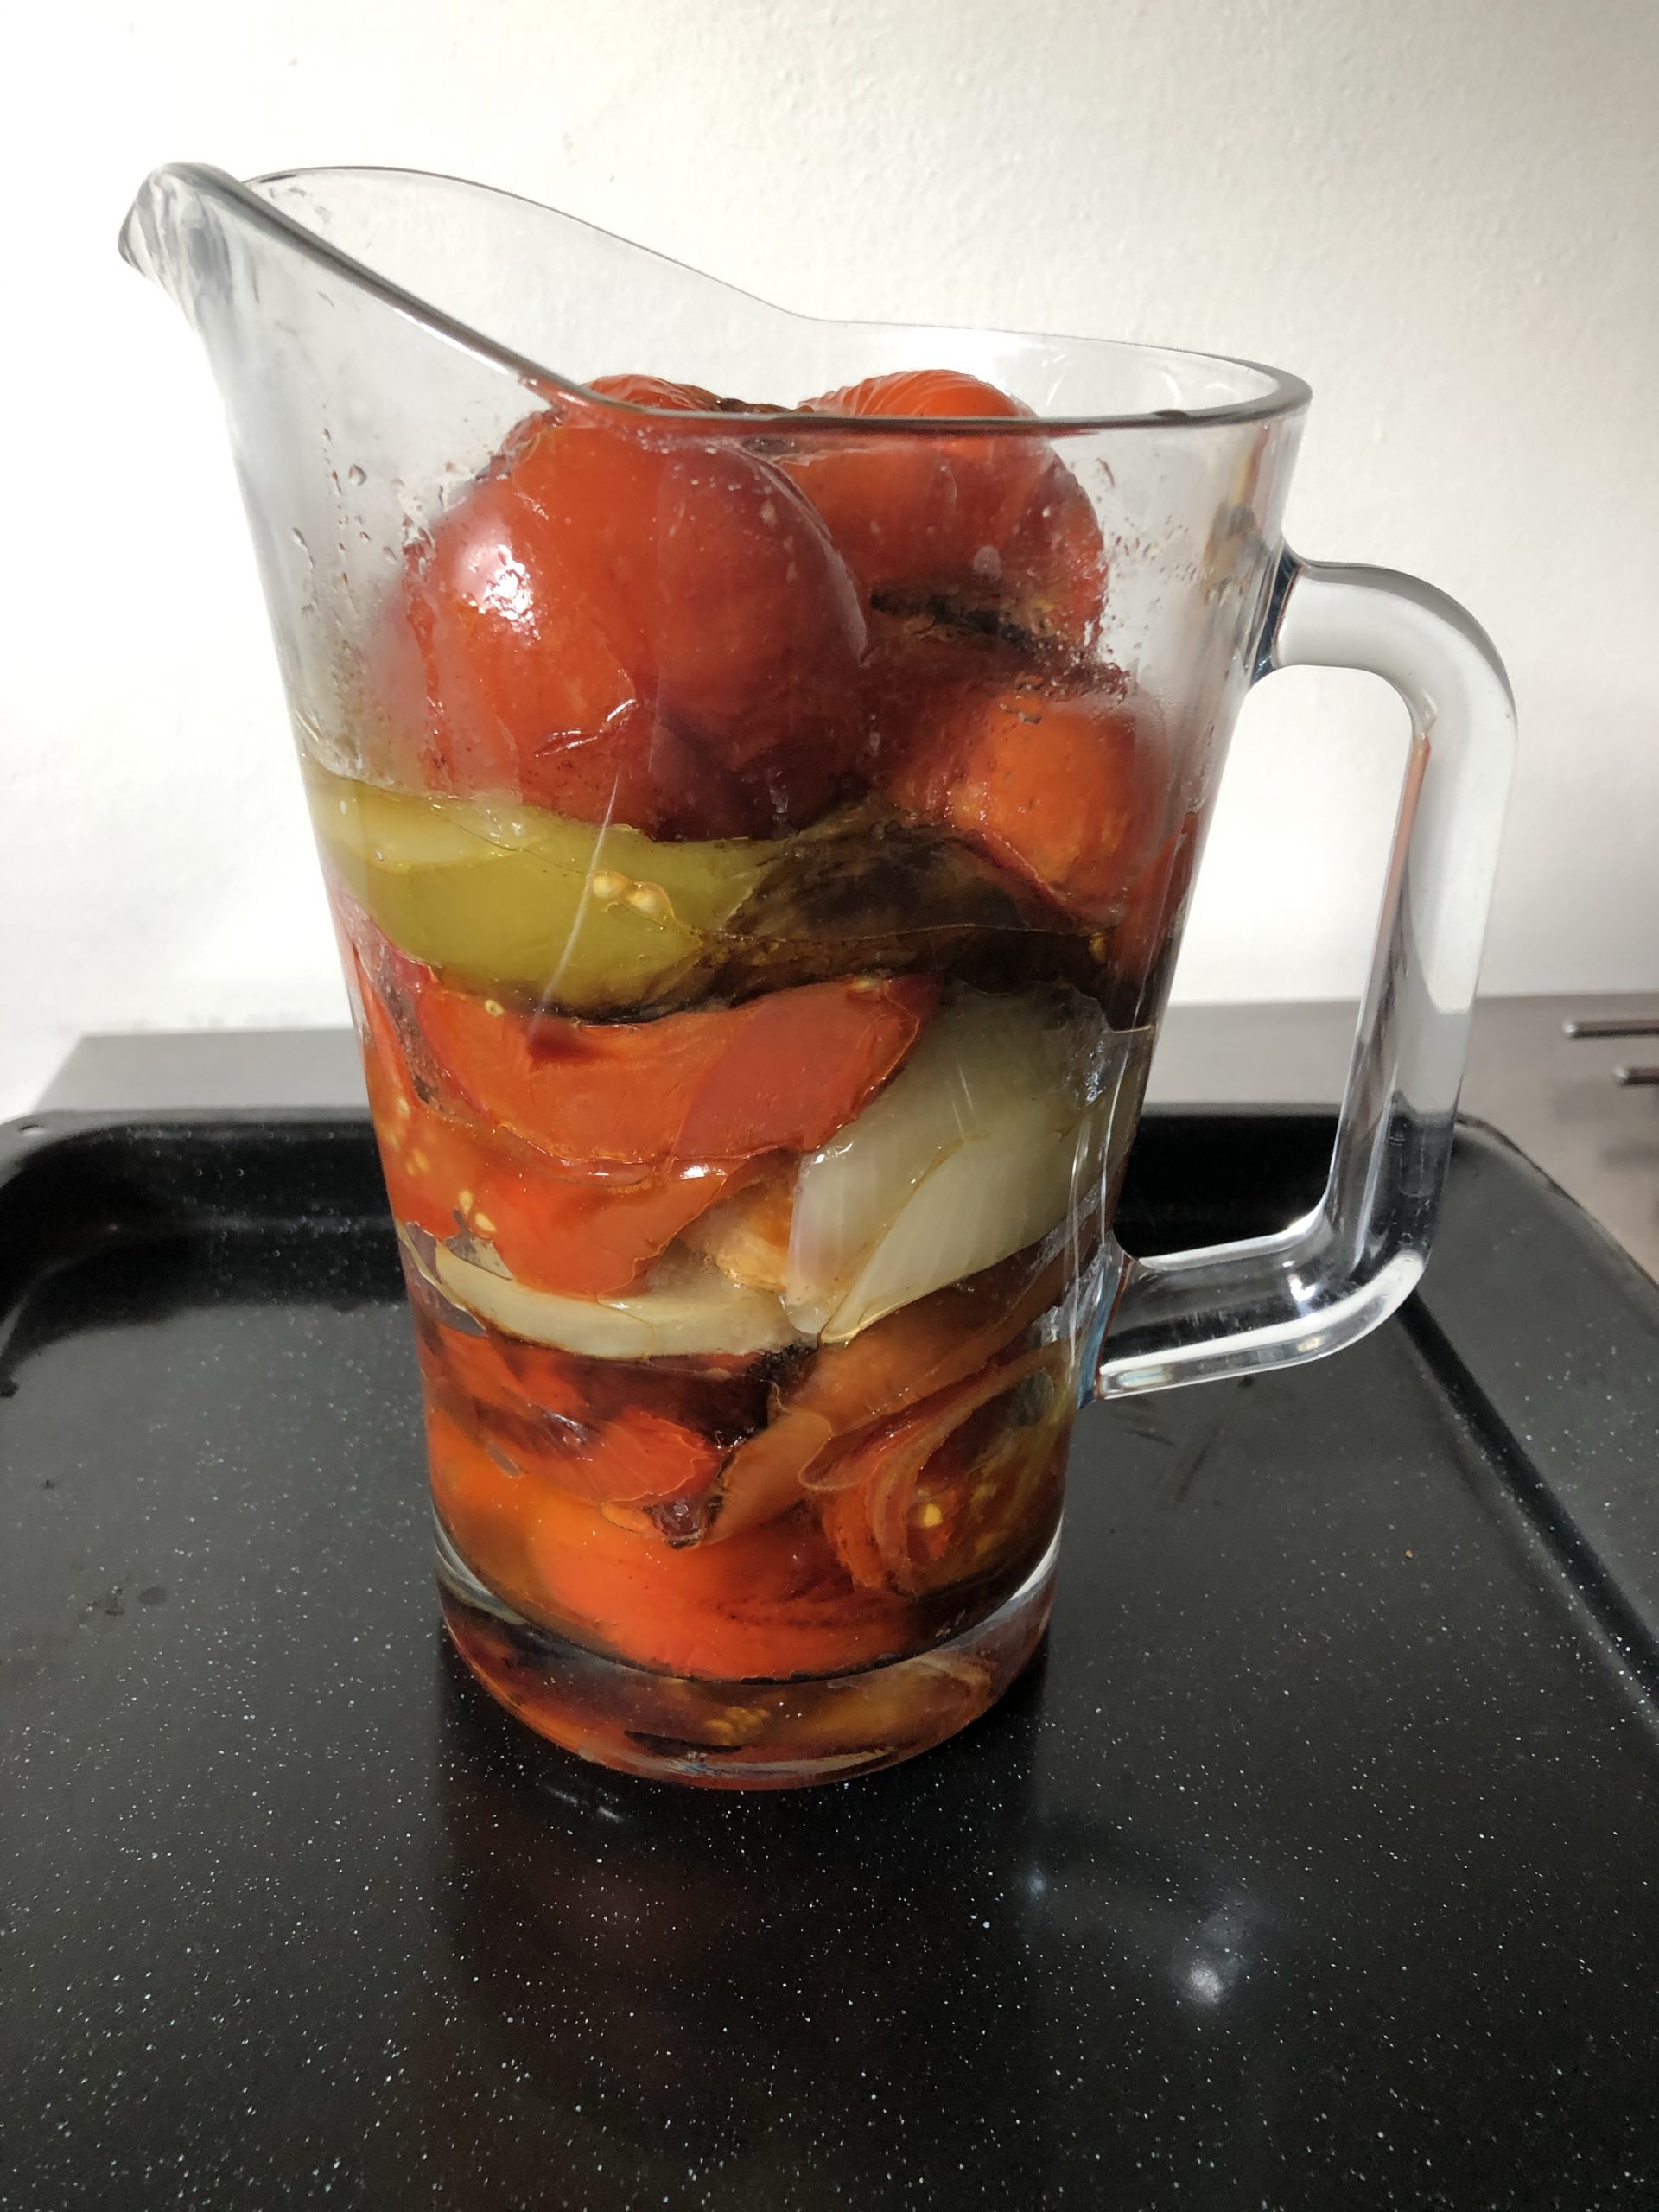 Tomato/onion/pepper version of ajvar